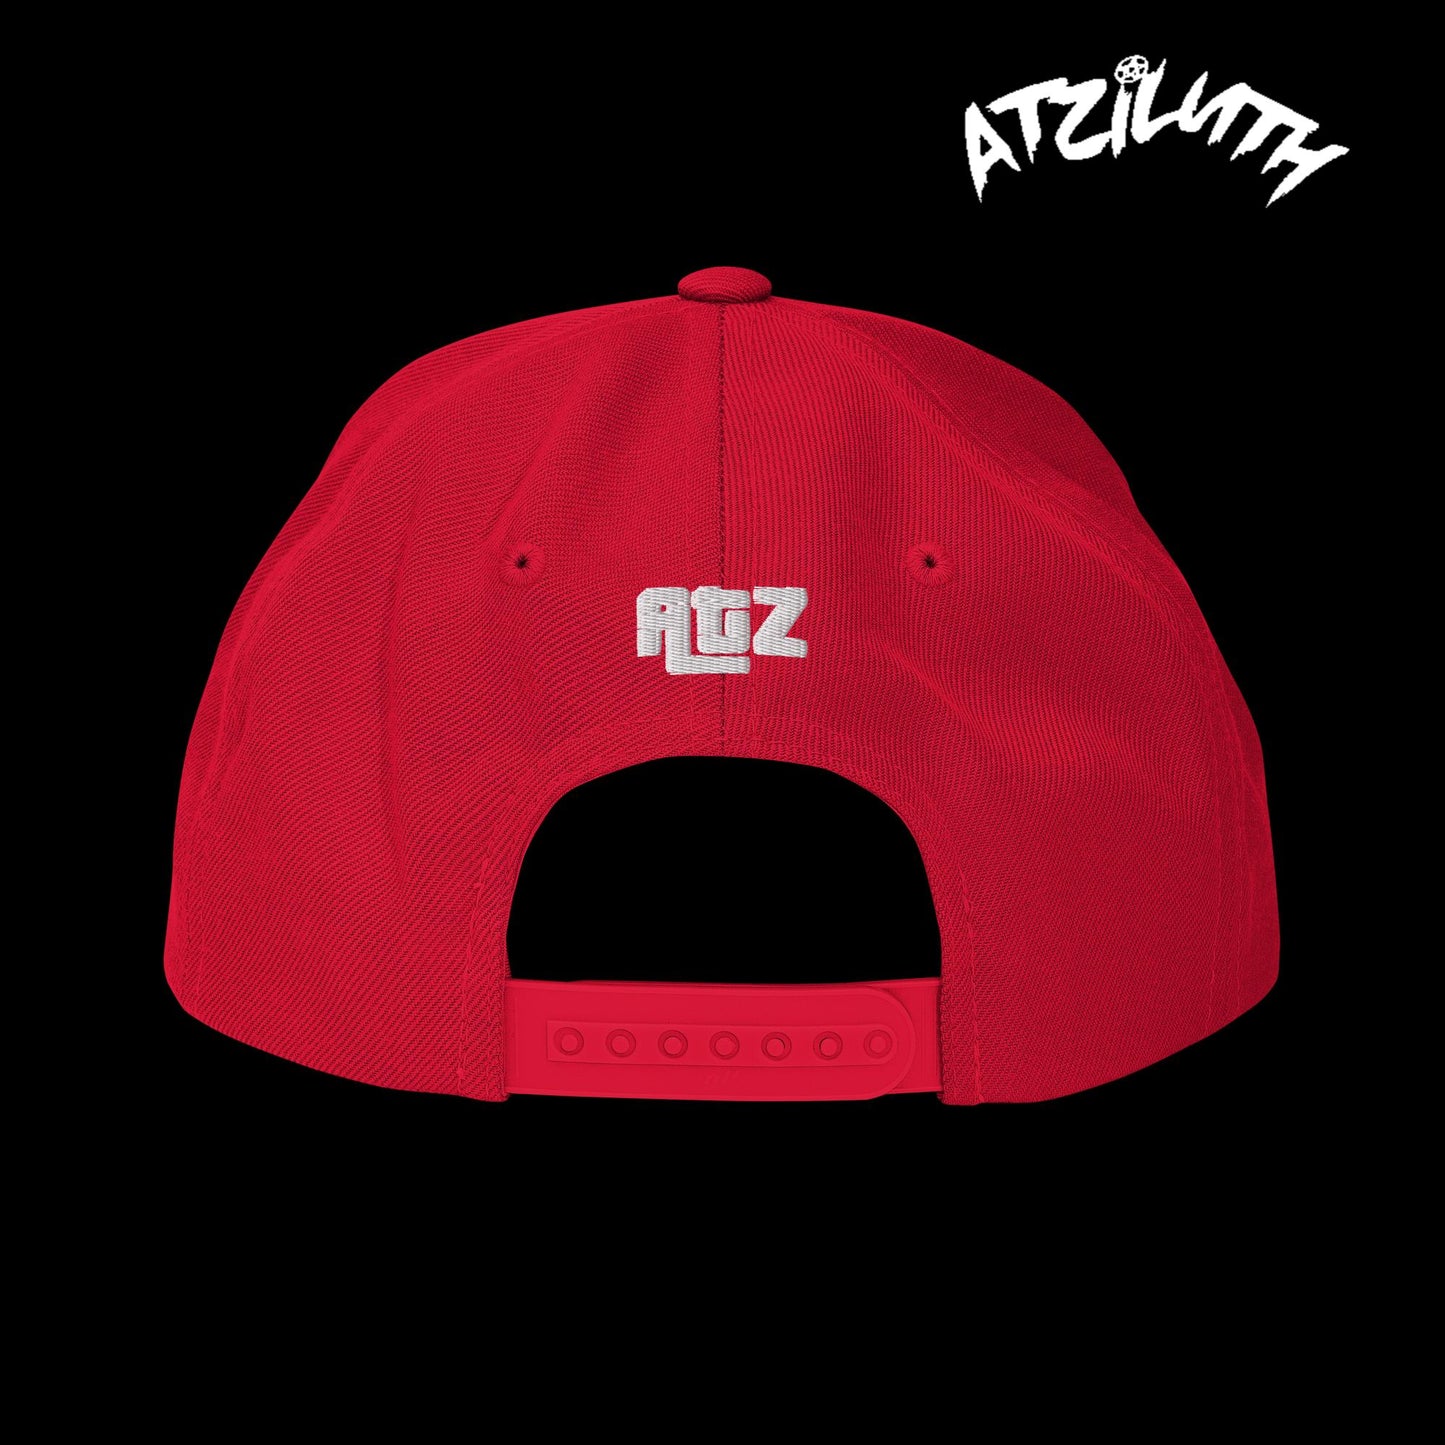 ATZ "Shooters" Snapback Hat